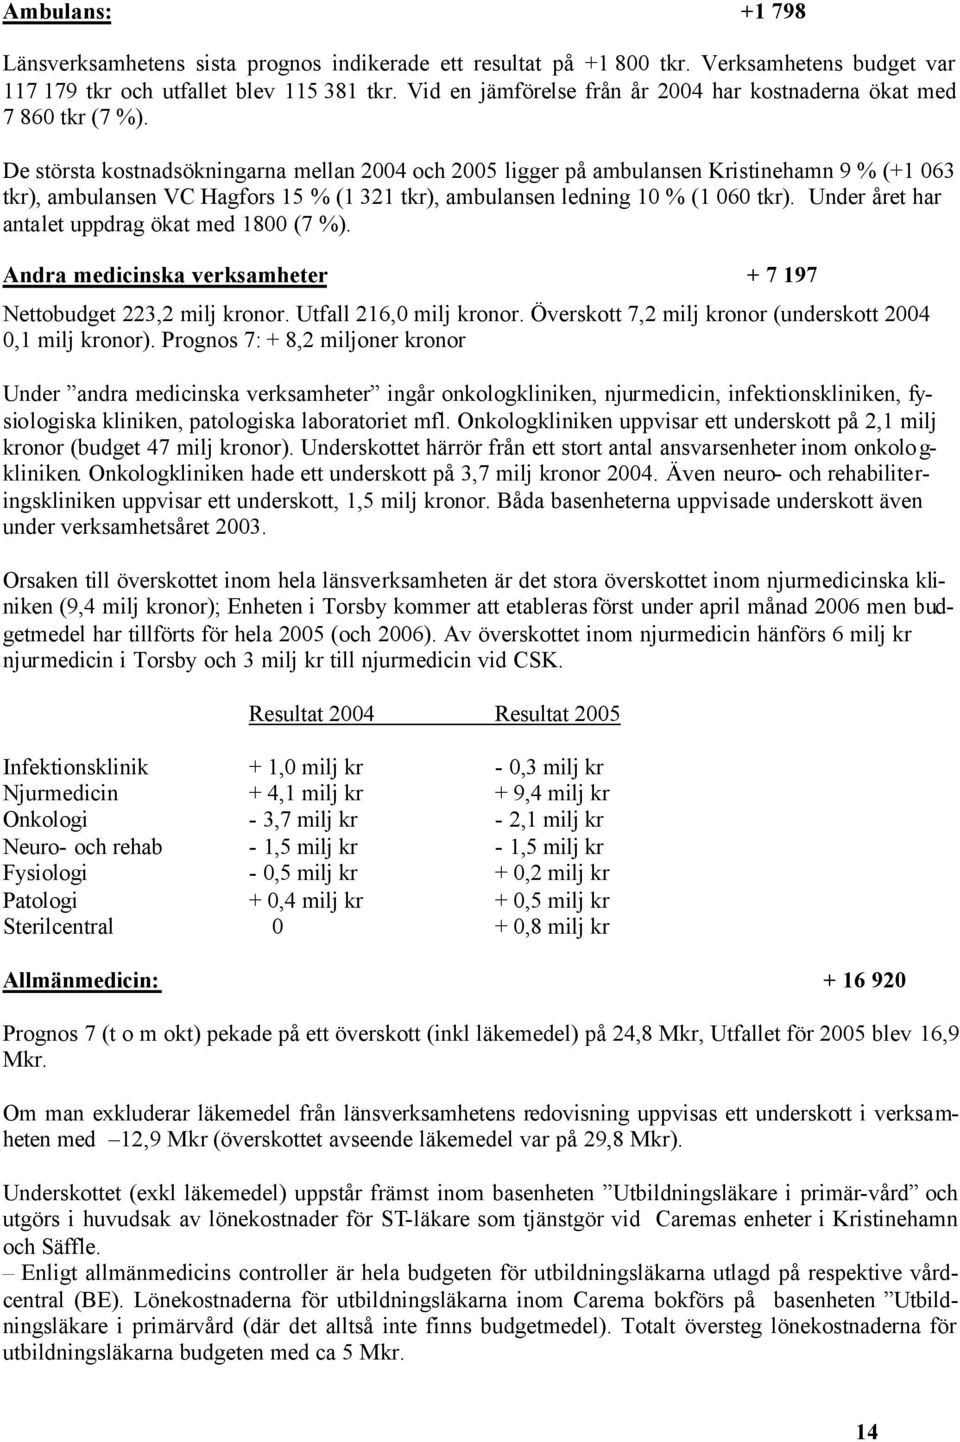 De största kostnadsökningarna mellan 2004 och 2005 ligger på ambulansen Kristinehamn 9 % (+1 063 tkr), ambulansen VC Hagfors 15 % (1 321 tkr), ambulansen ledning 10 % (1 060 tkr).